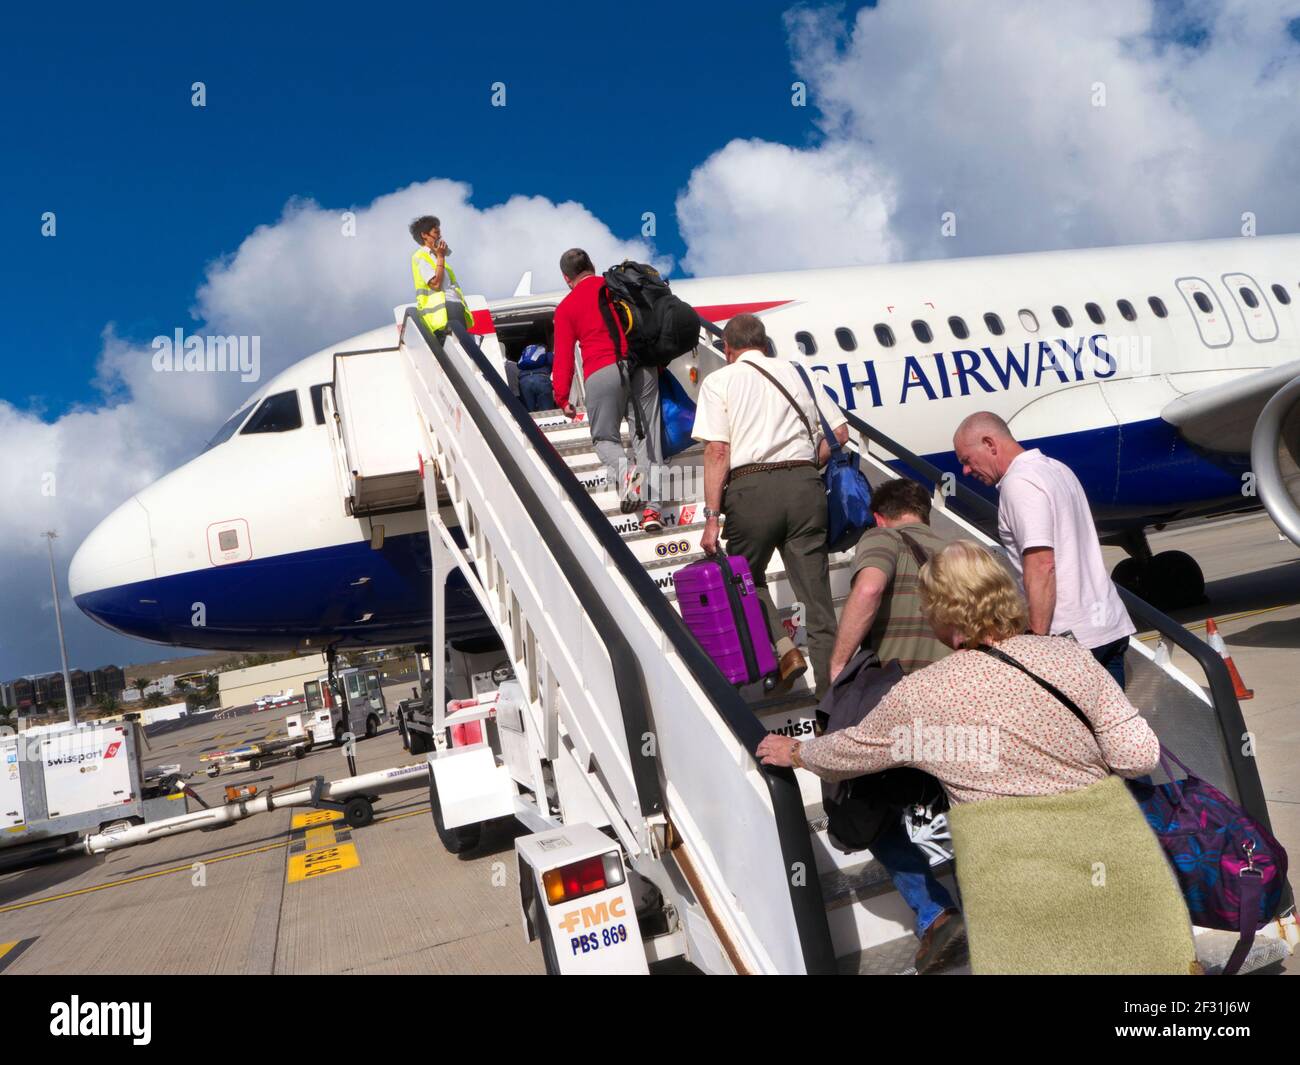 PASSAGIERE, die ein British Airways-Flugzeug über eine Treppe nach vorne  besteigen Kabine mit Handgepäck in sonnigen Urlaub blau Himmel Airline  Reisekonzept Stockfotografie - Alamy